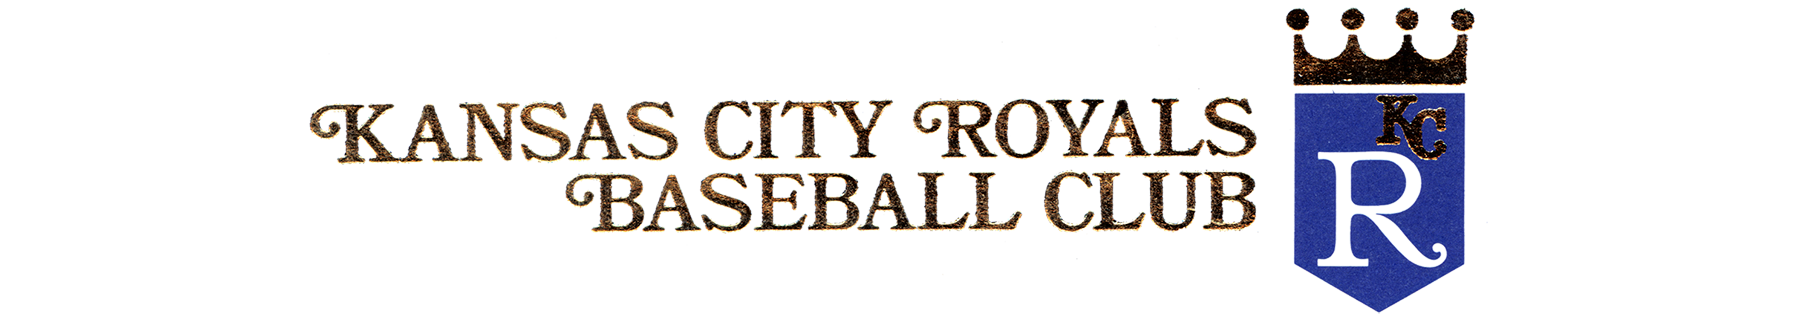 Kansas City Royals Baseball Club